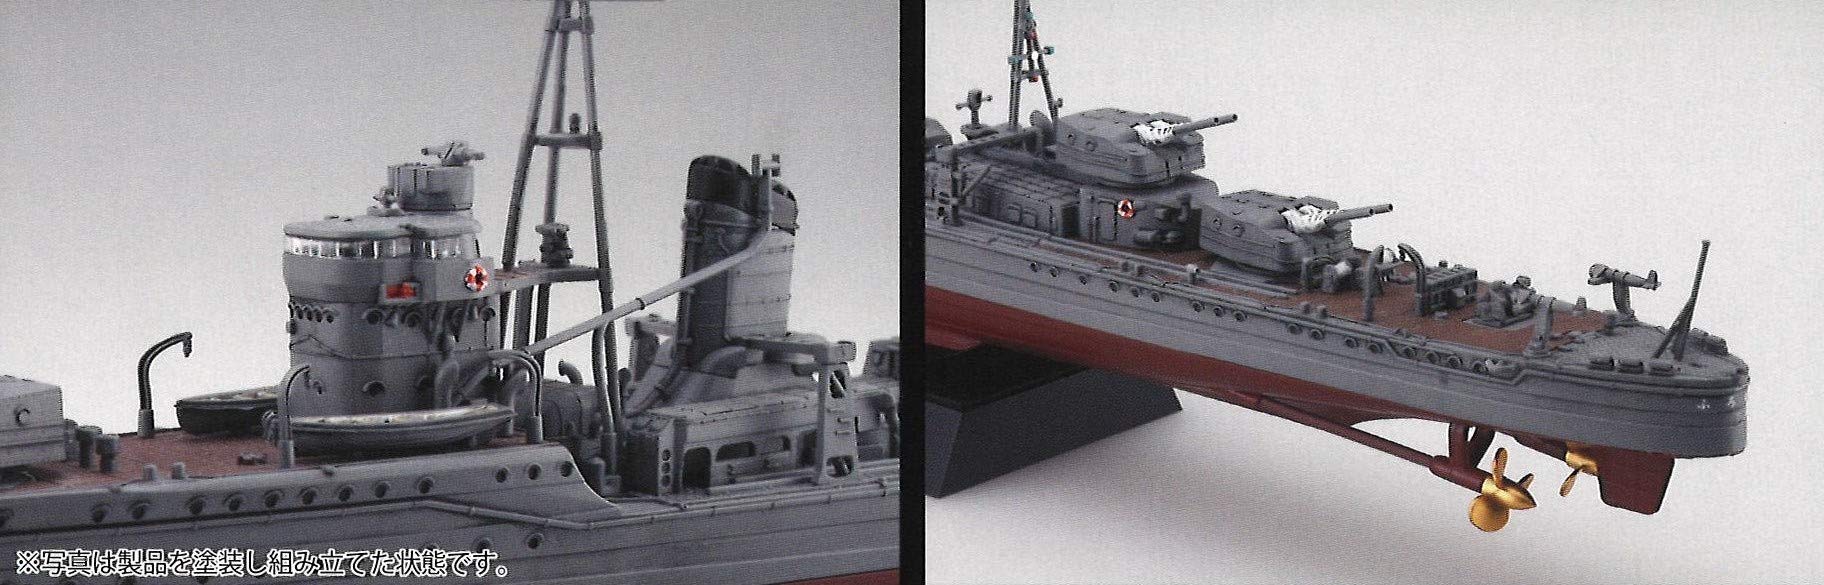 Fujimi modèle 1/350 navire Next Series No.4 marine japonaise Kagerou destroyer Kagero code couleur plastique modèle 350 navire Nx-4